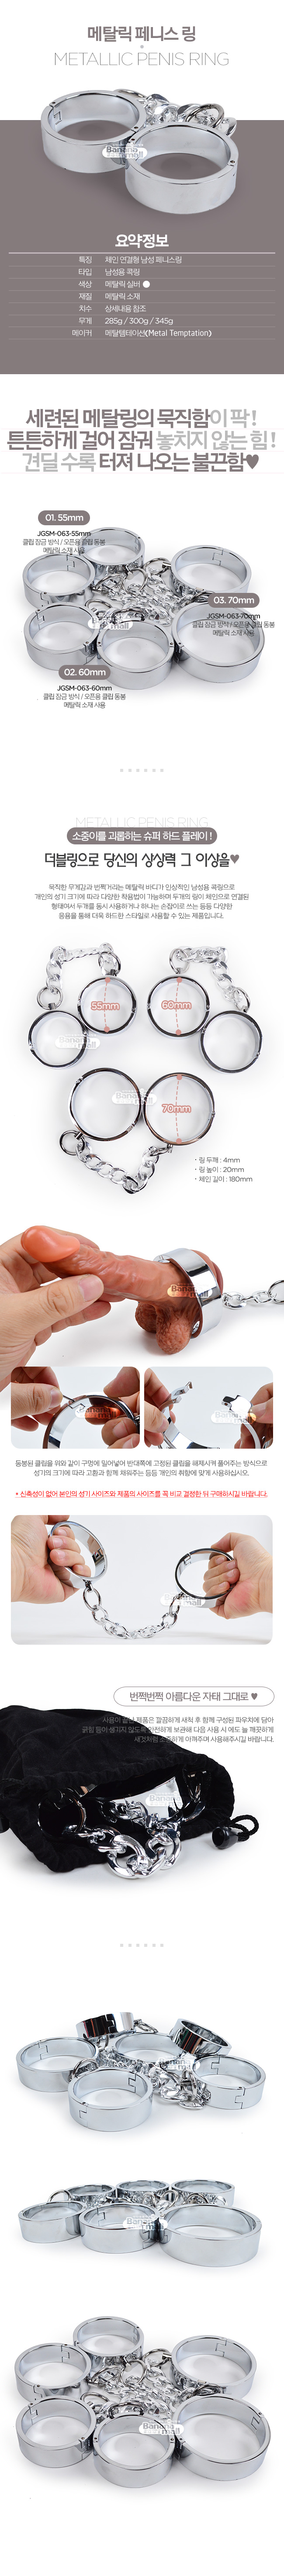 [남성 강화] 메탈릭 페니스 링(Metallic Penis Ring)